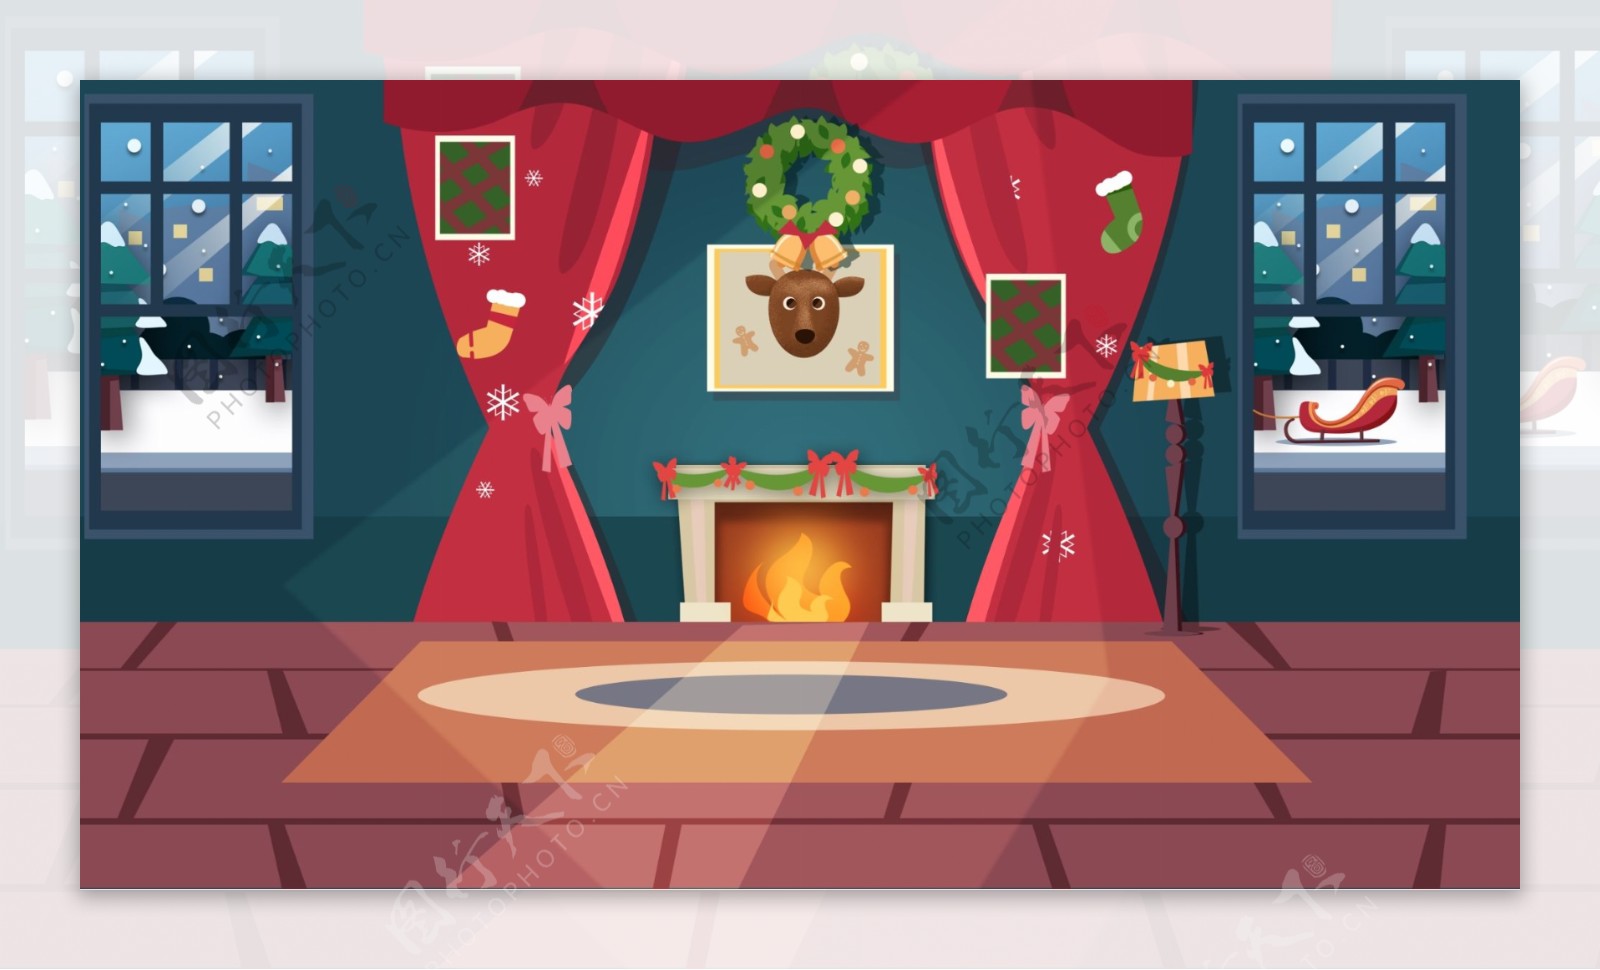 手绘圣诞节室内壁炉背景素材